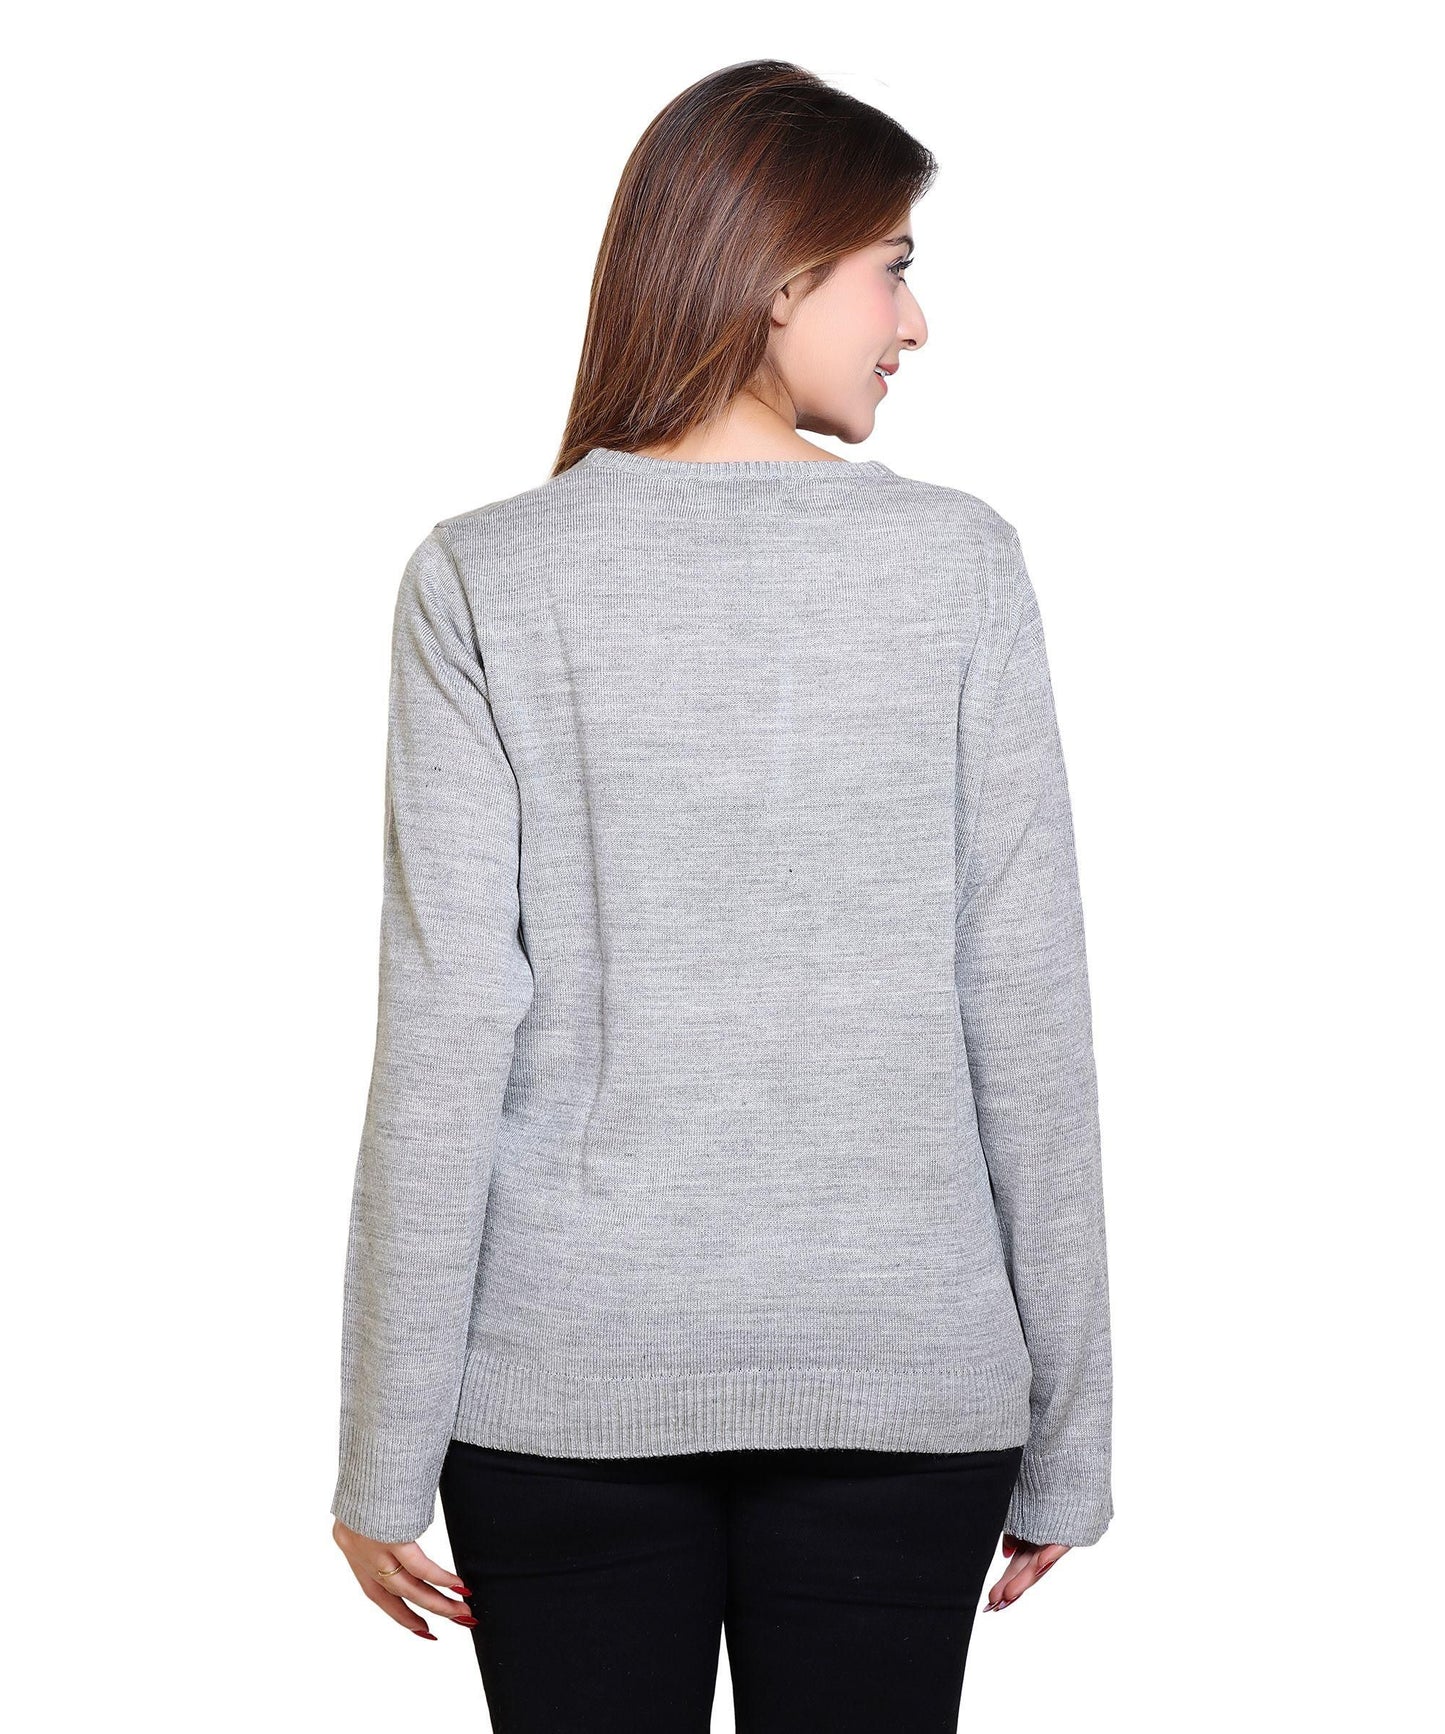 Women's Solid Wool Blend Sweater